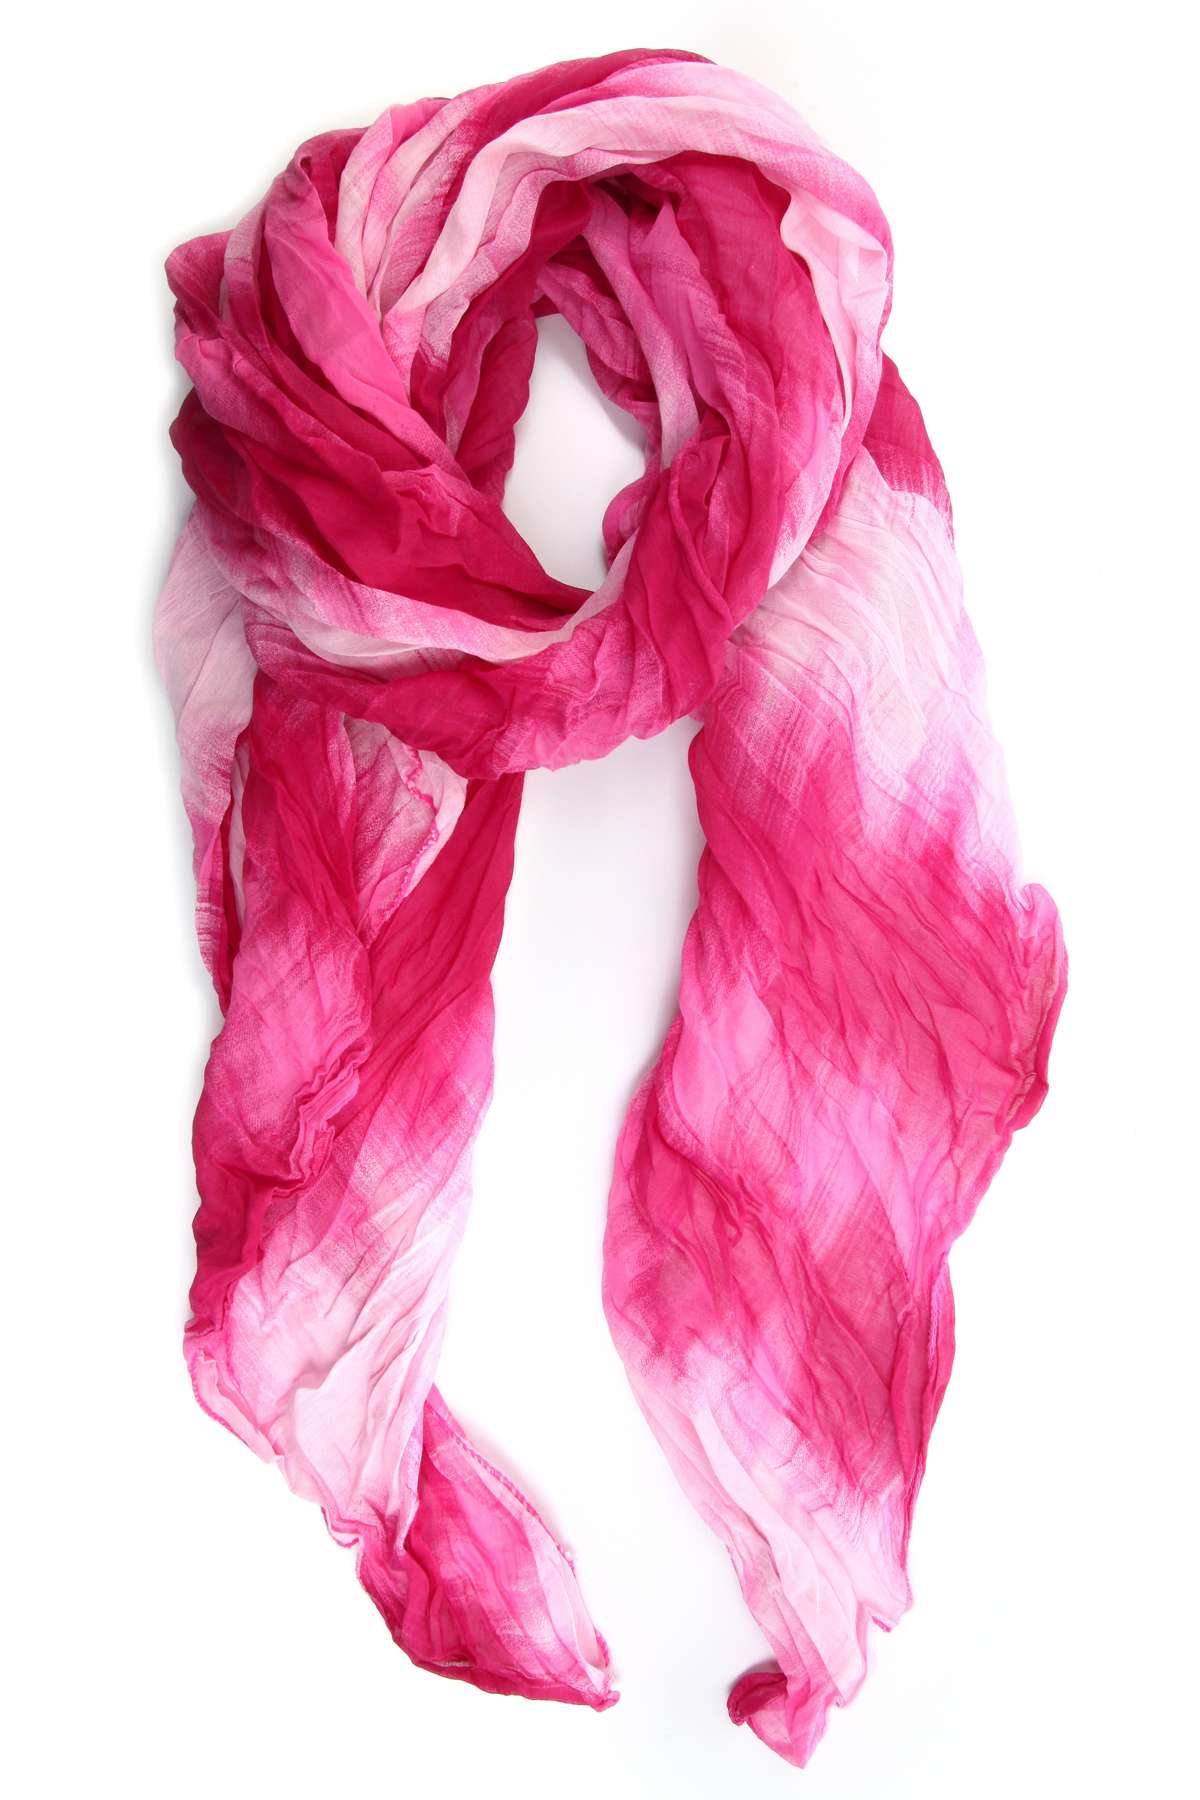 Модный шарф (1 шт.), имитация батика.